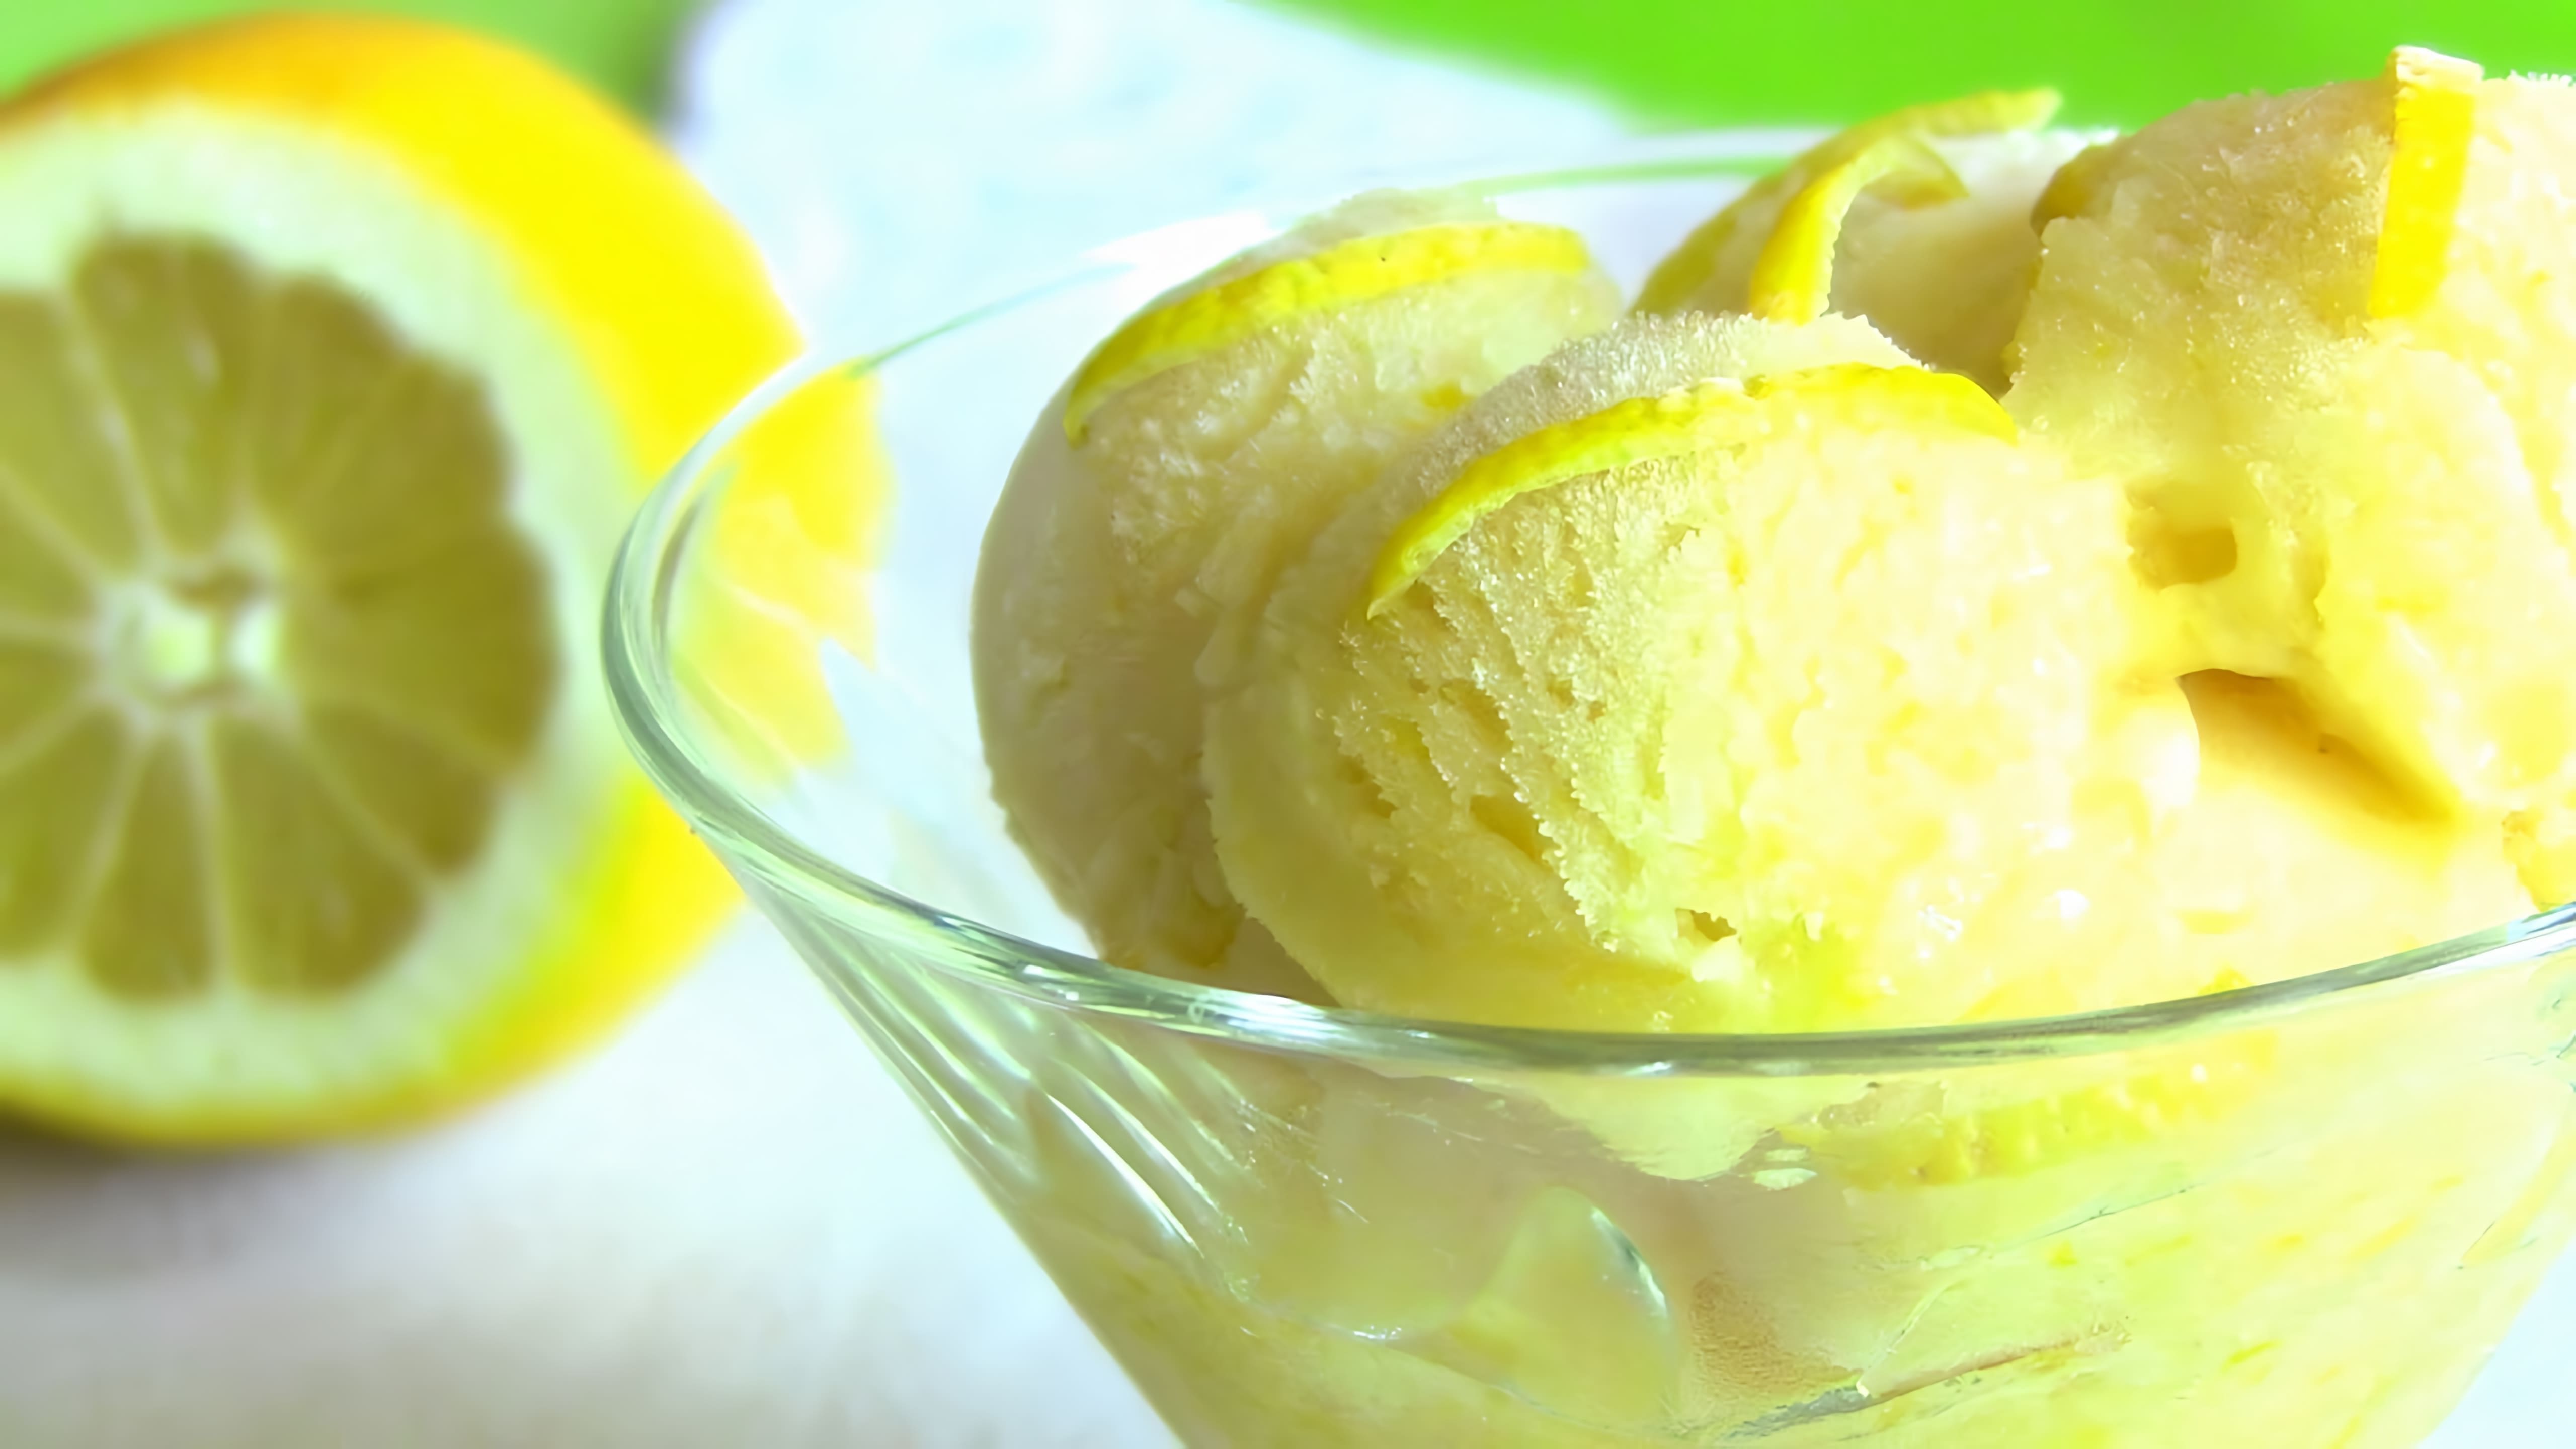 В этом видео демонстрируется рецепт приготовления лимонного сорбета